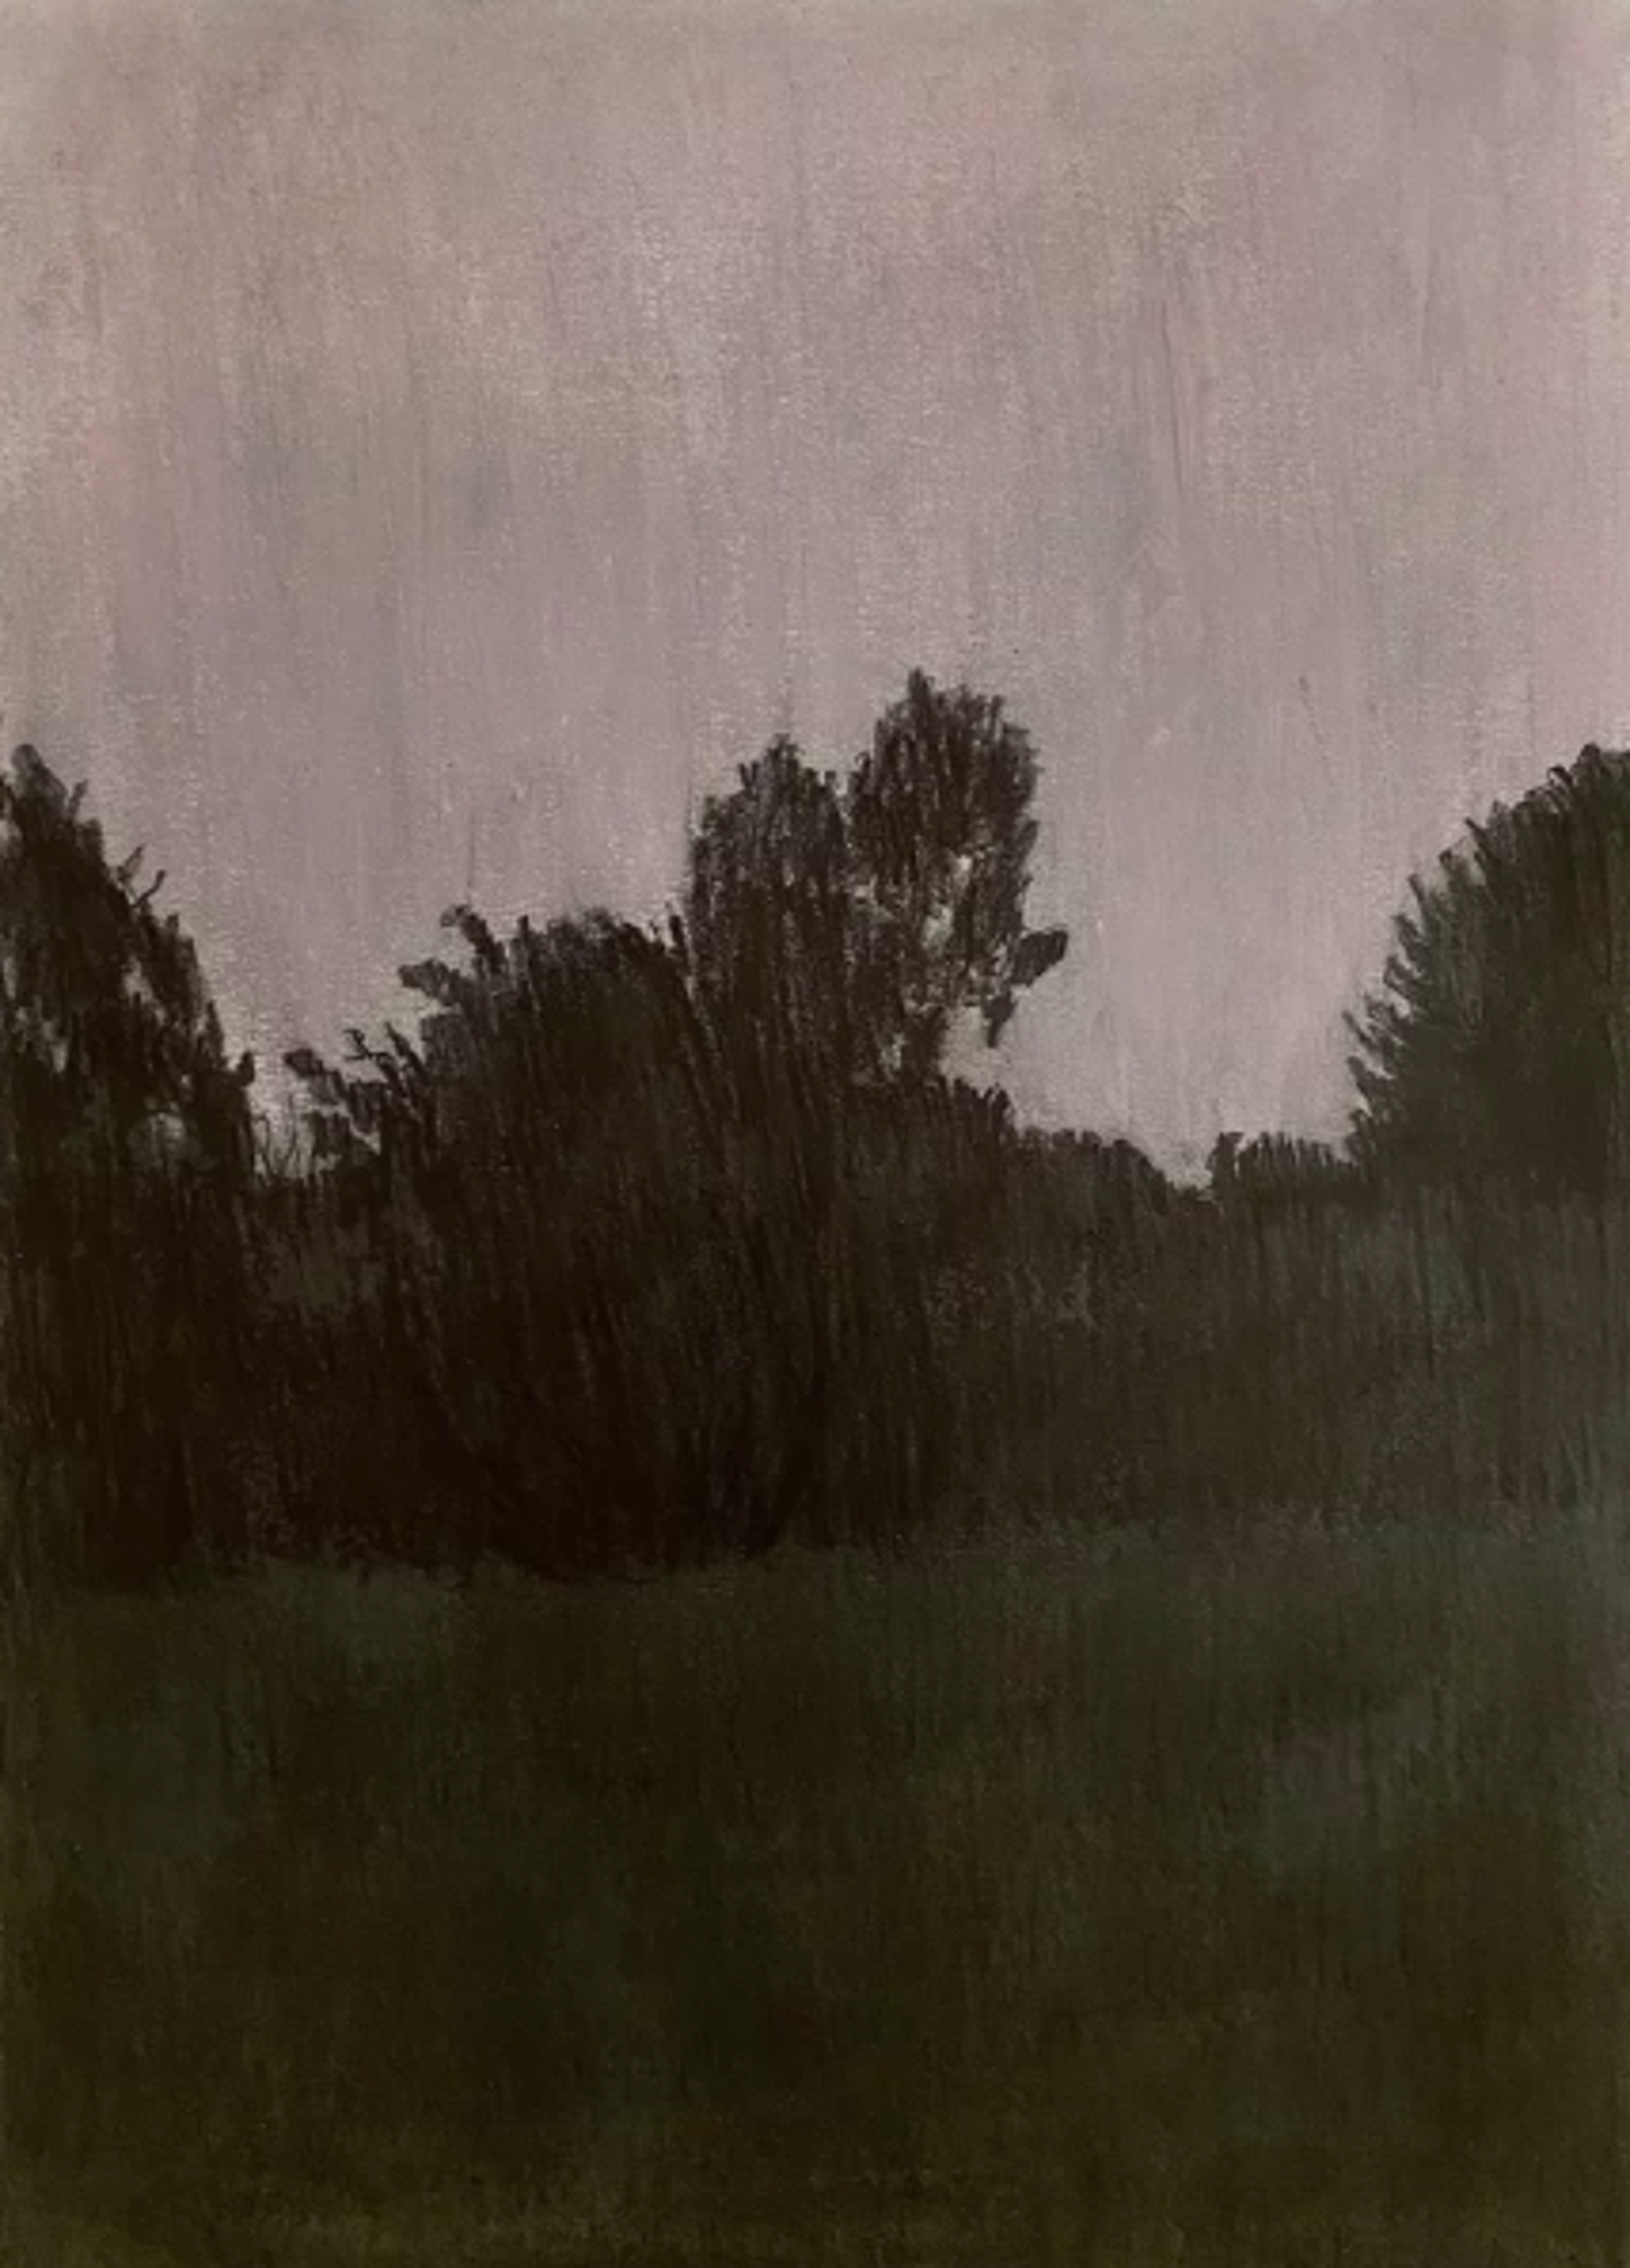 Insomnia (Rainy Night) by Per Adolfsen